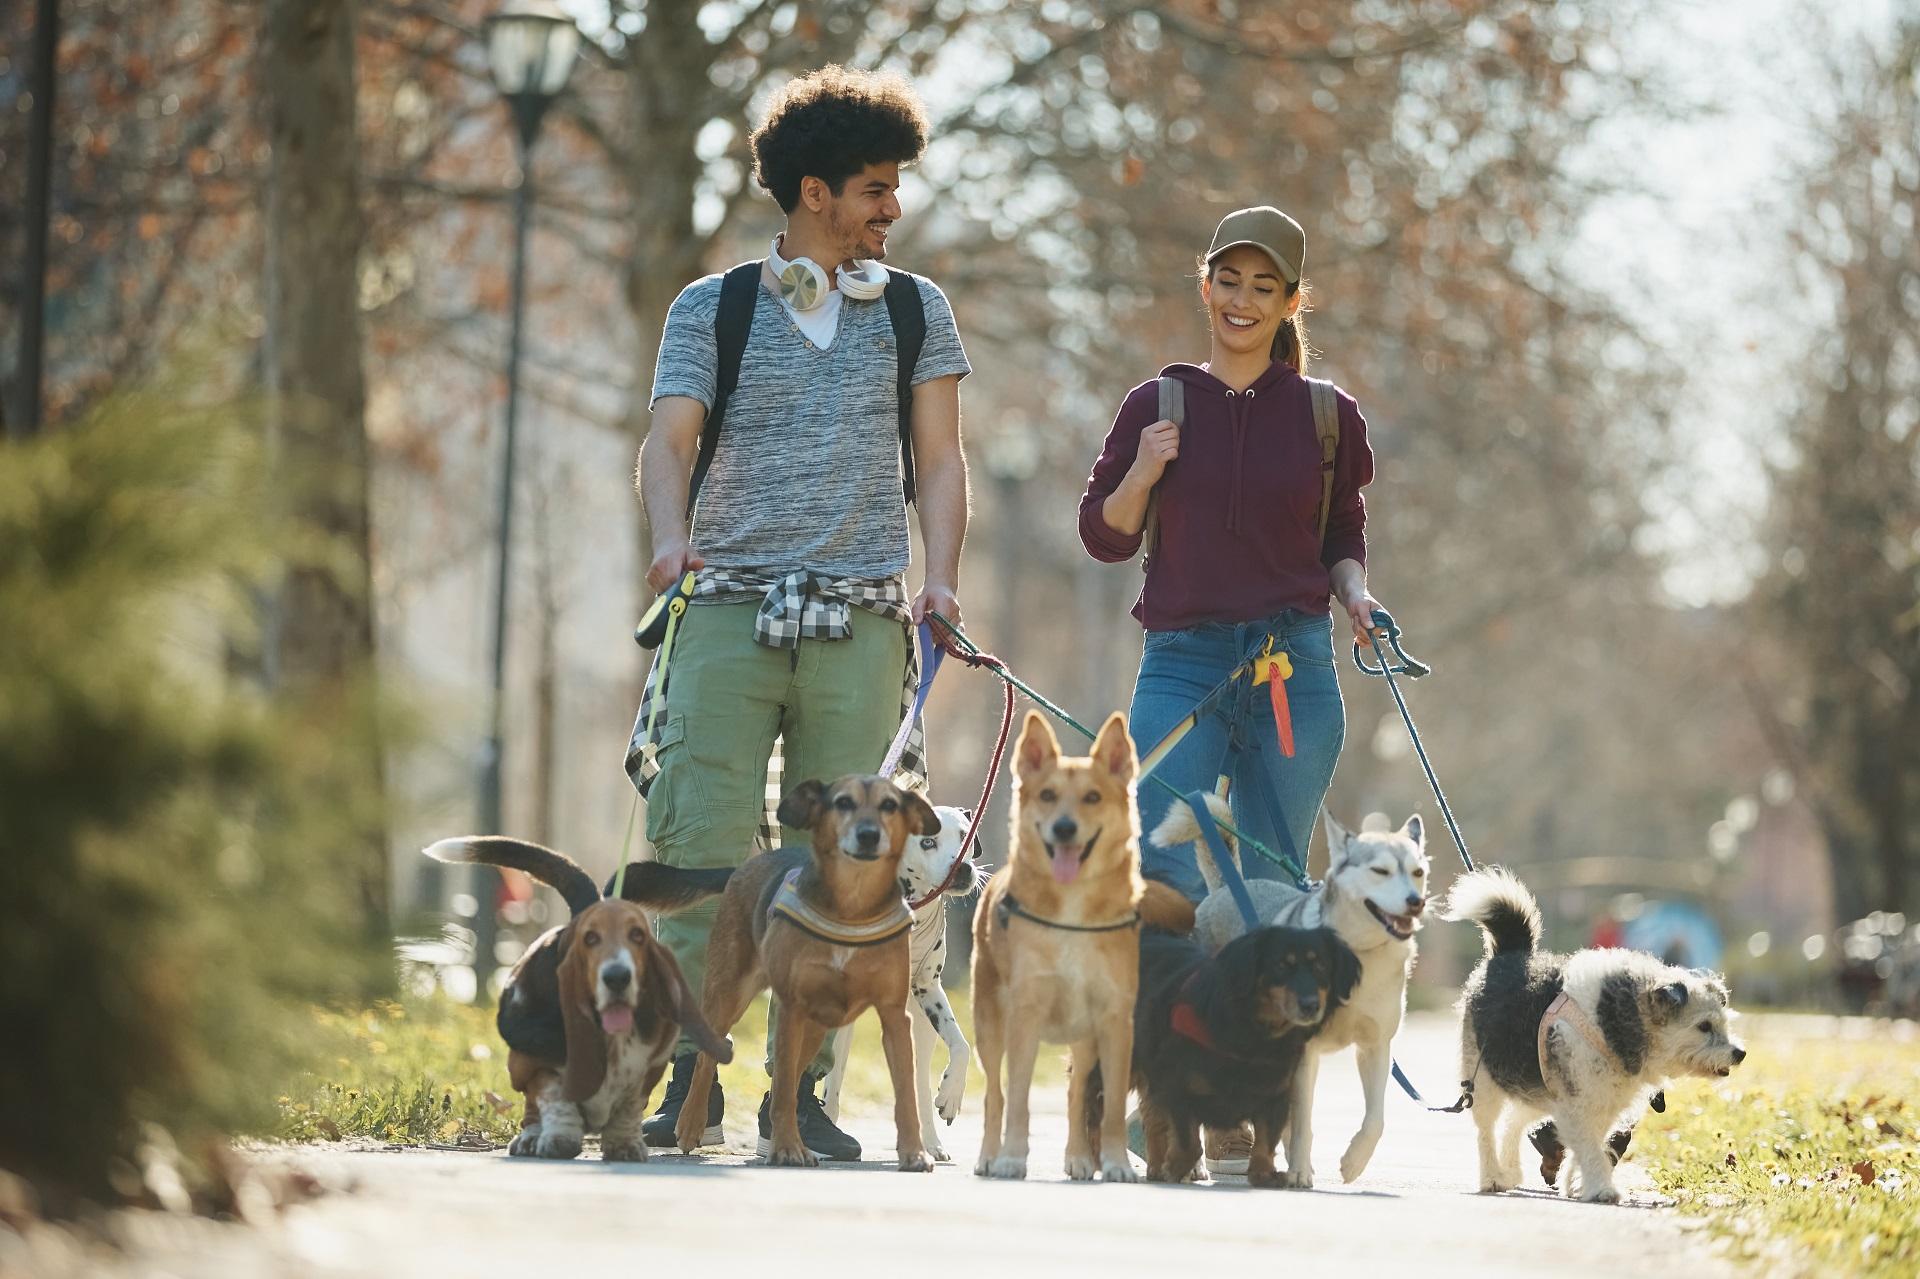 Dos personas pasean varios perros en un parque (Shutterstock).